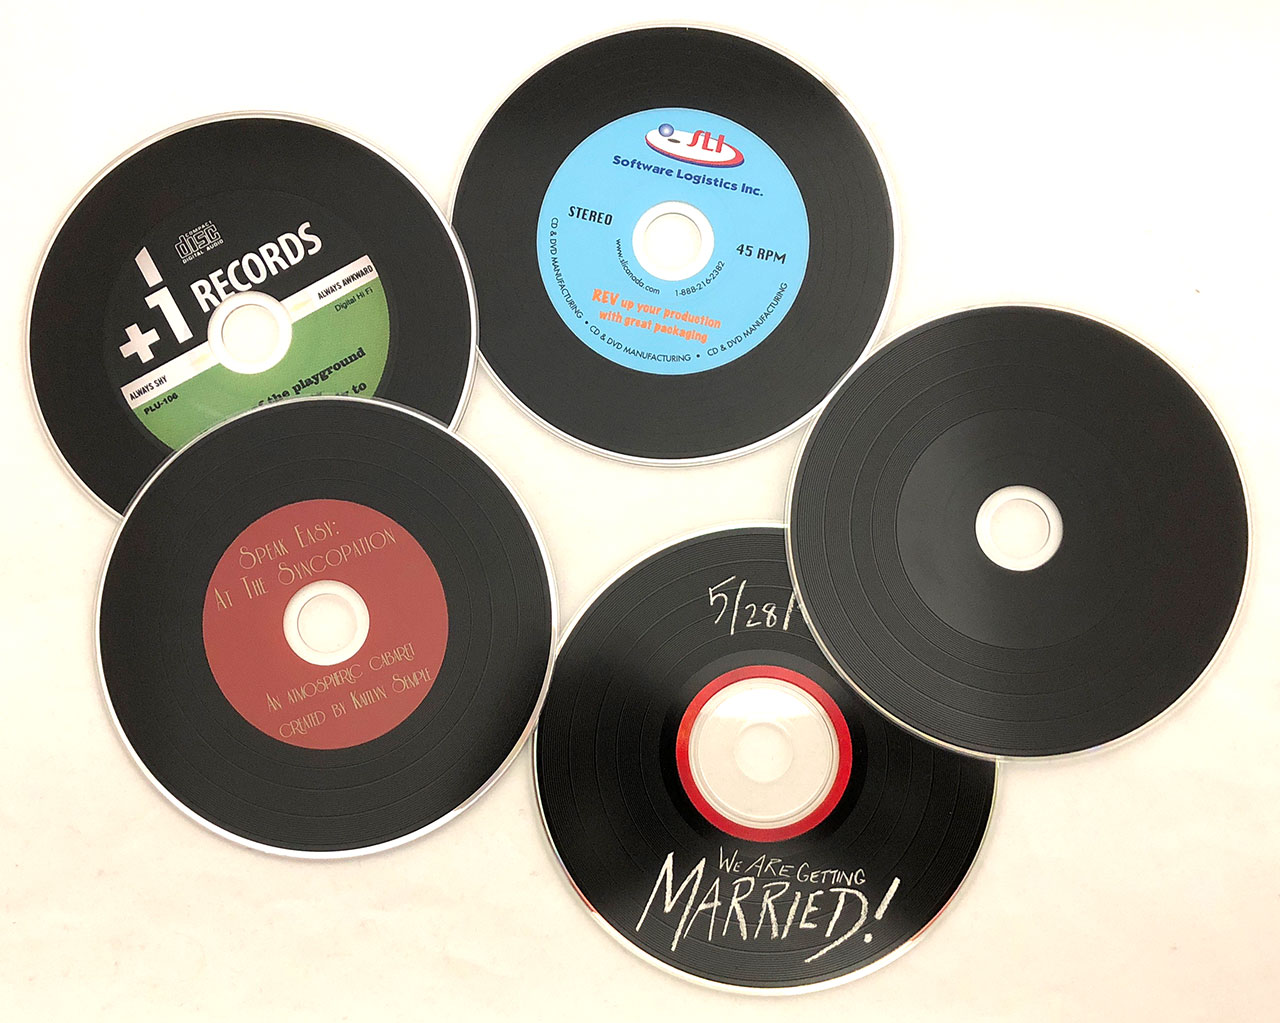 CD silkscreen w/ vinyl grooves